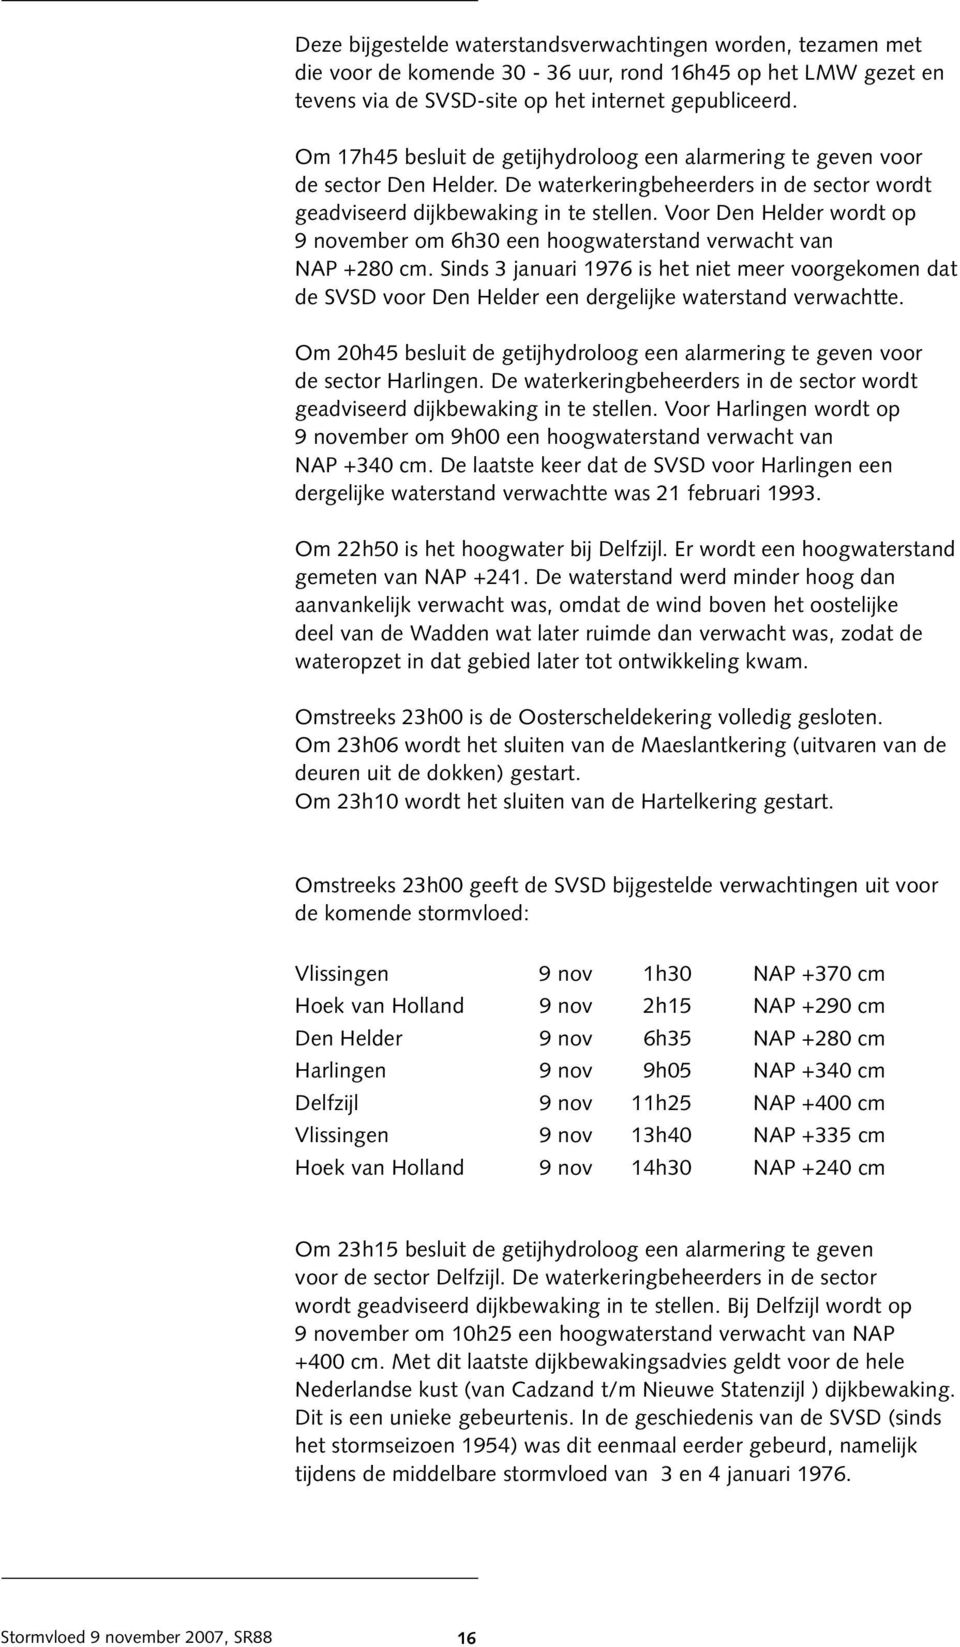 Voor Den Helder wordt op 9 november om 6h30 een hoogwaterstand verwacht van NAP +280 cm.